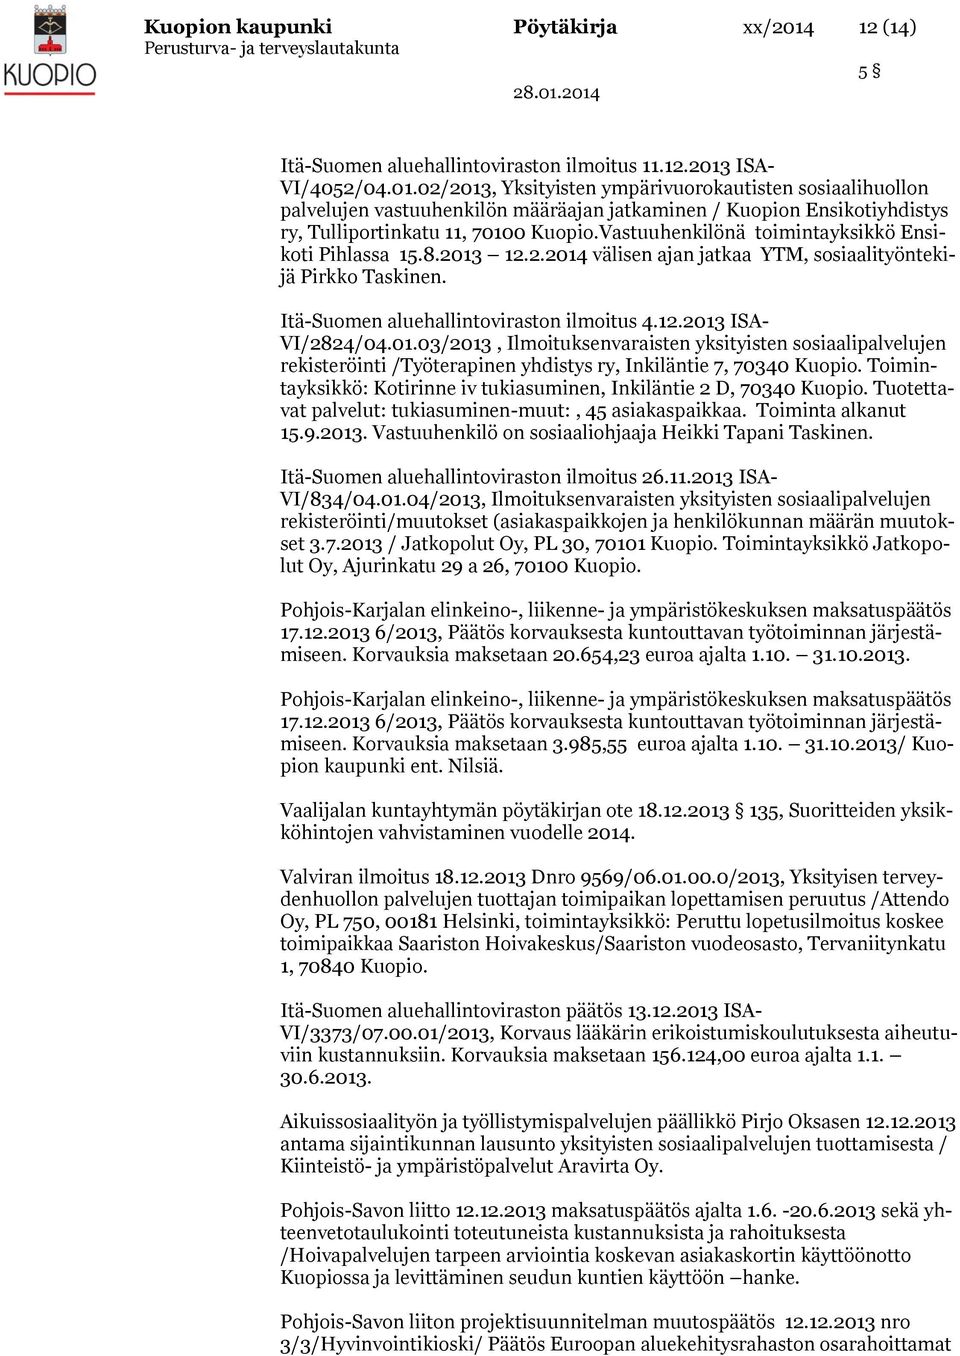 ISA- VI/4052/04.01.02/2013, Yksityisten ympärivuorokautisten sosiaalihuollon palvelujen vastuuhenkilön määräajan jatkaminen / Kuopion Ensikotiyhdistys ry, Tulliportinkatu 11, 70100 Kuopio.